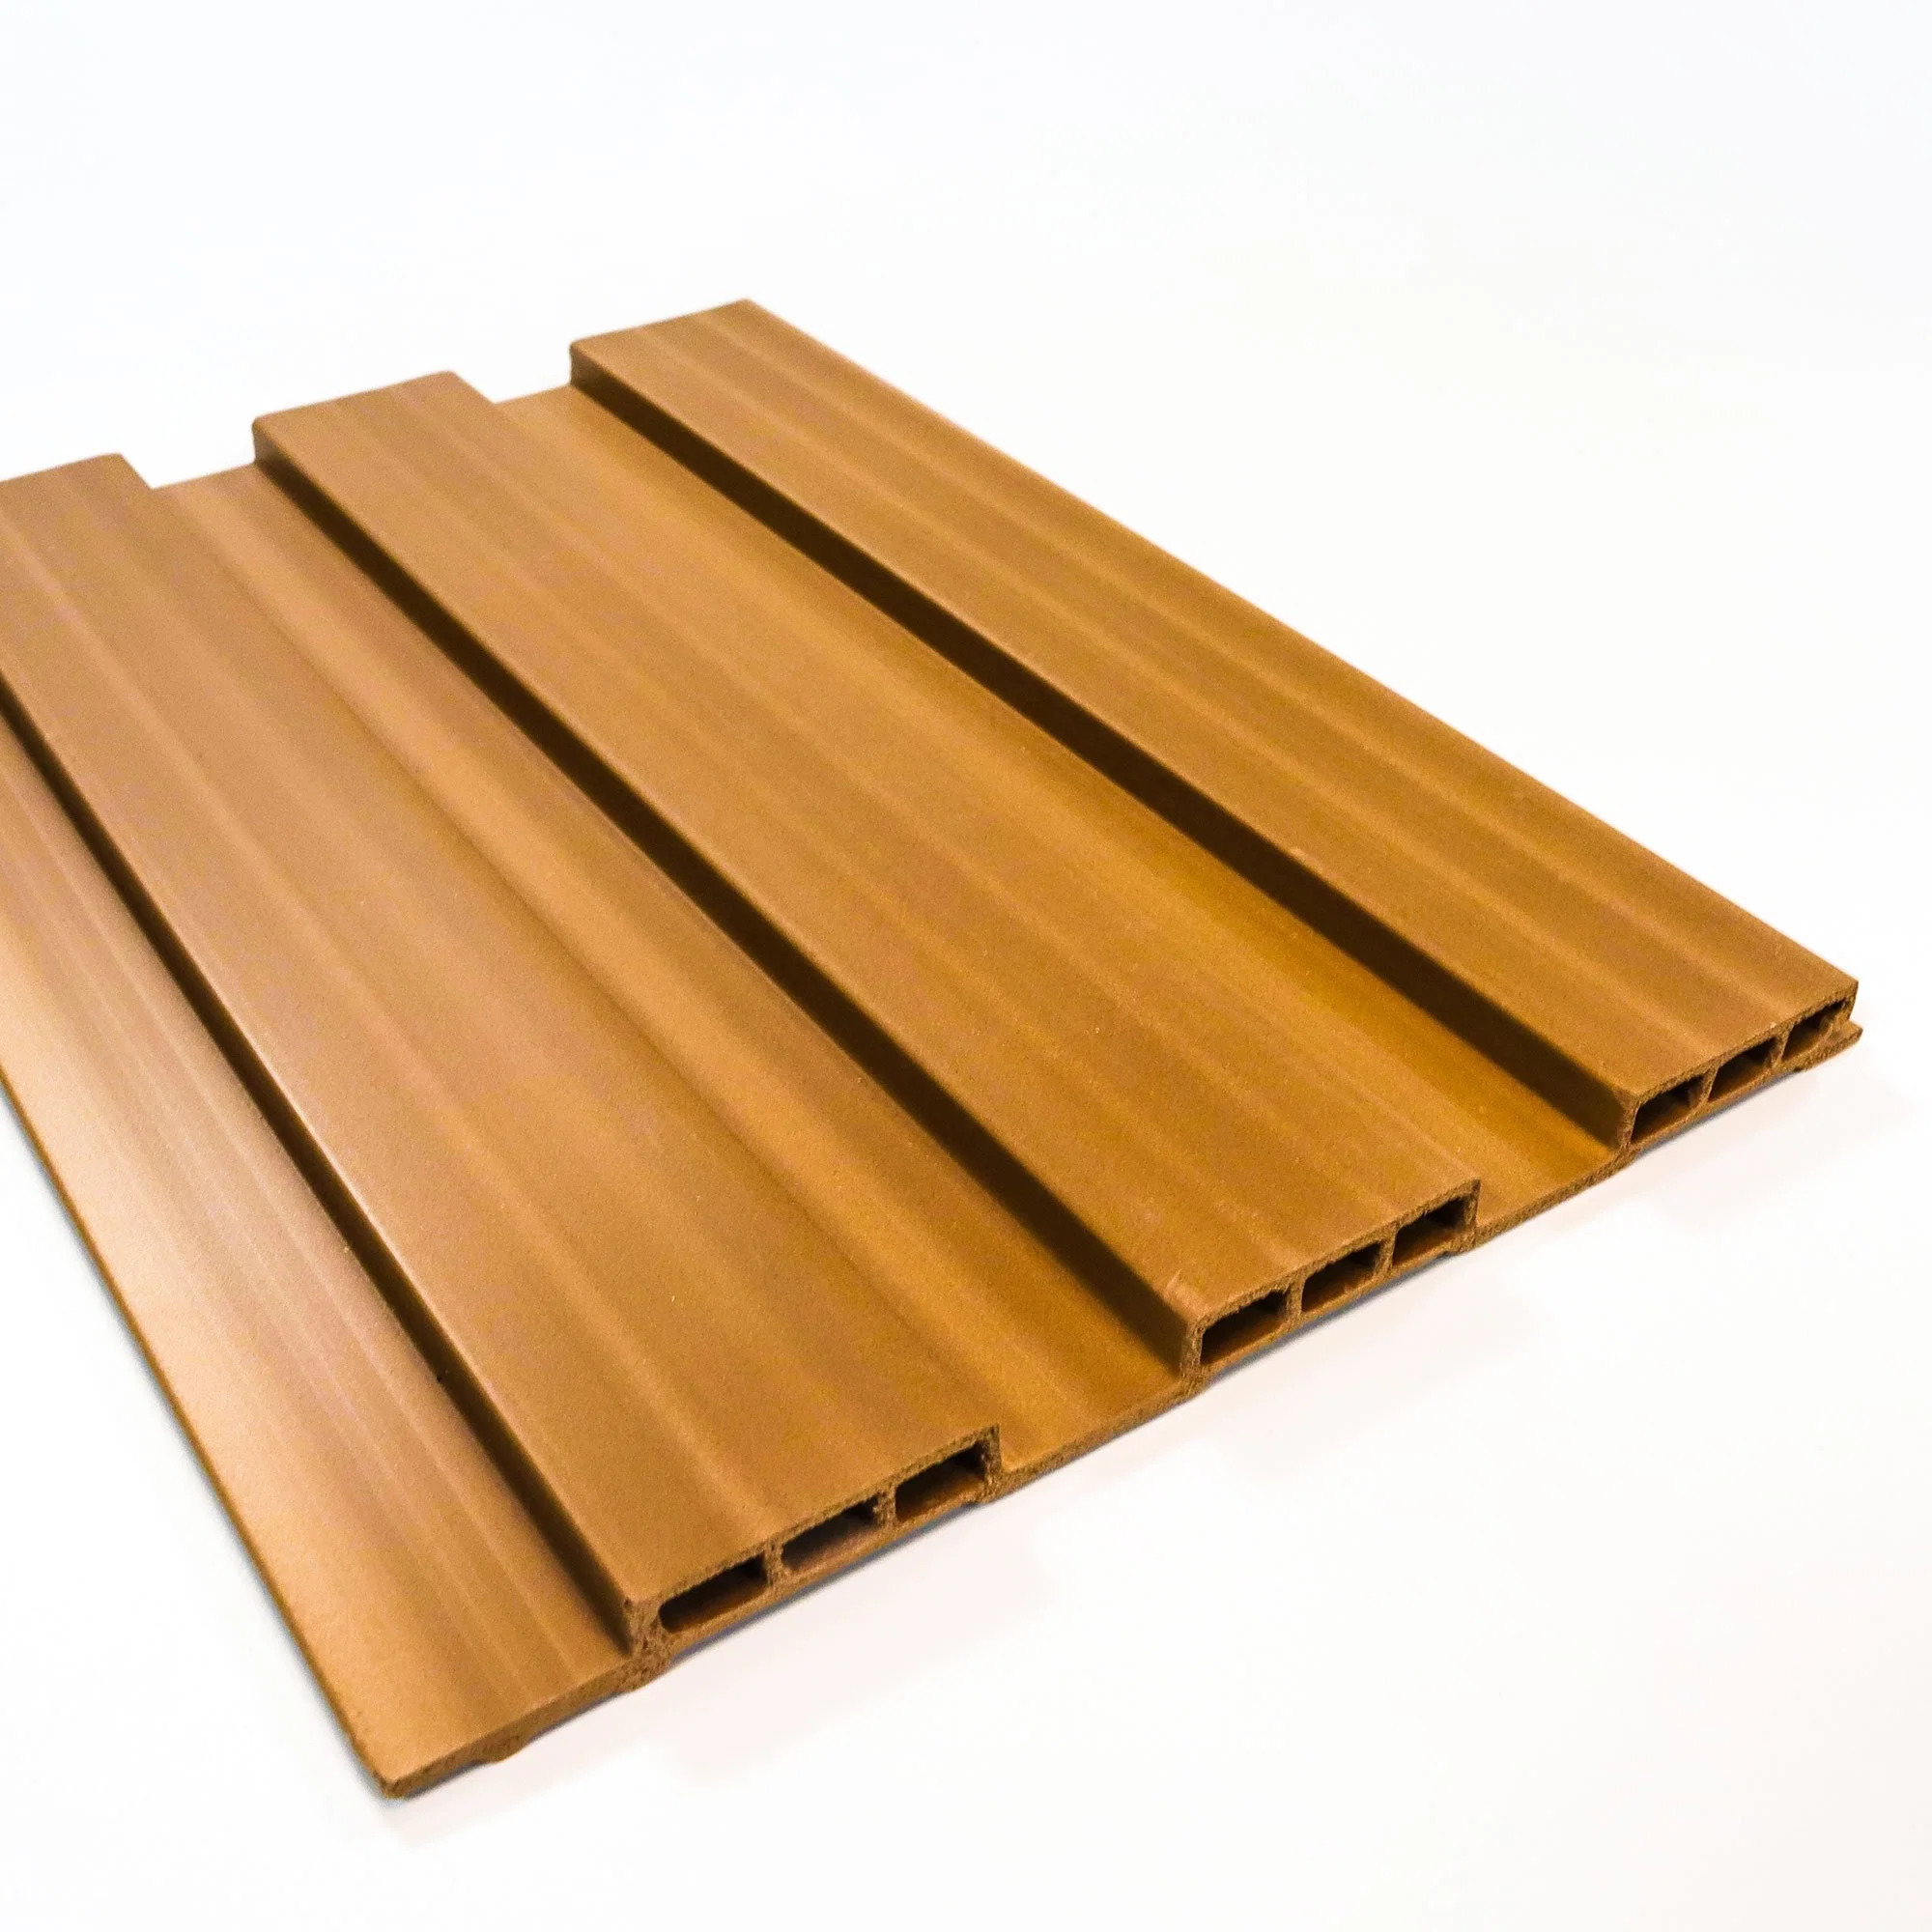 195mm de fibra de madera decorativa interior compuesto de plástico de la cuadrícula de madera integrada el panel de pared Decoración de interiores de uso